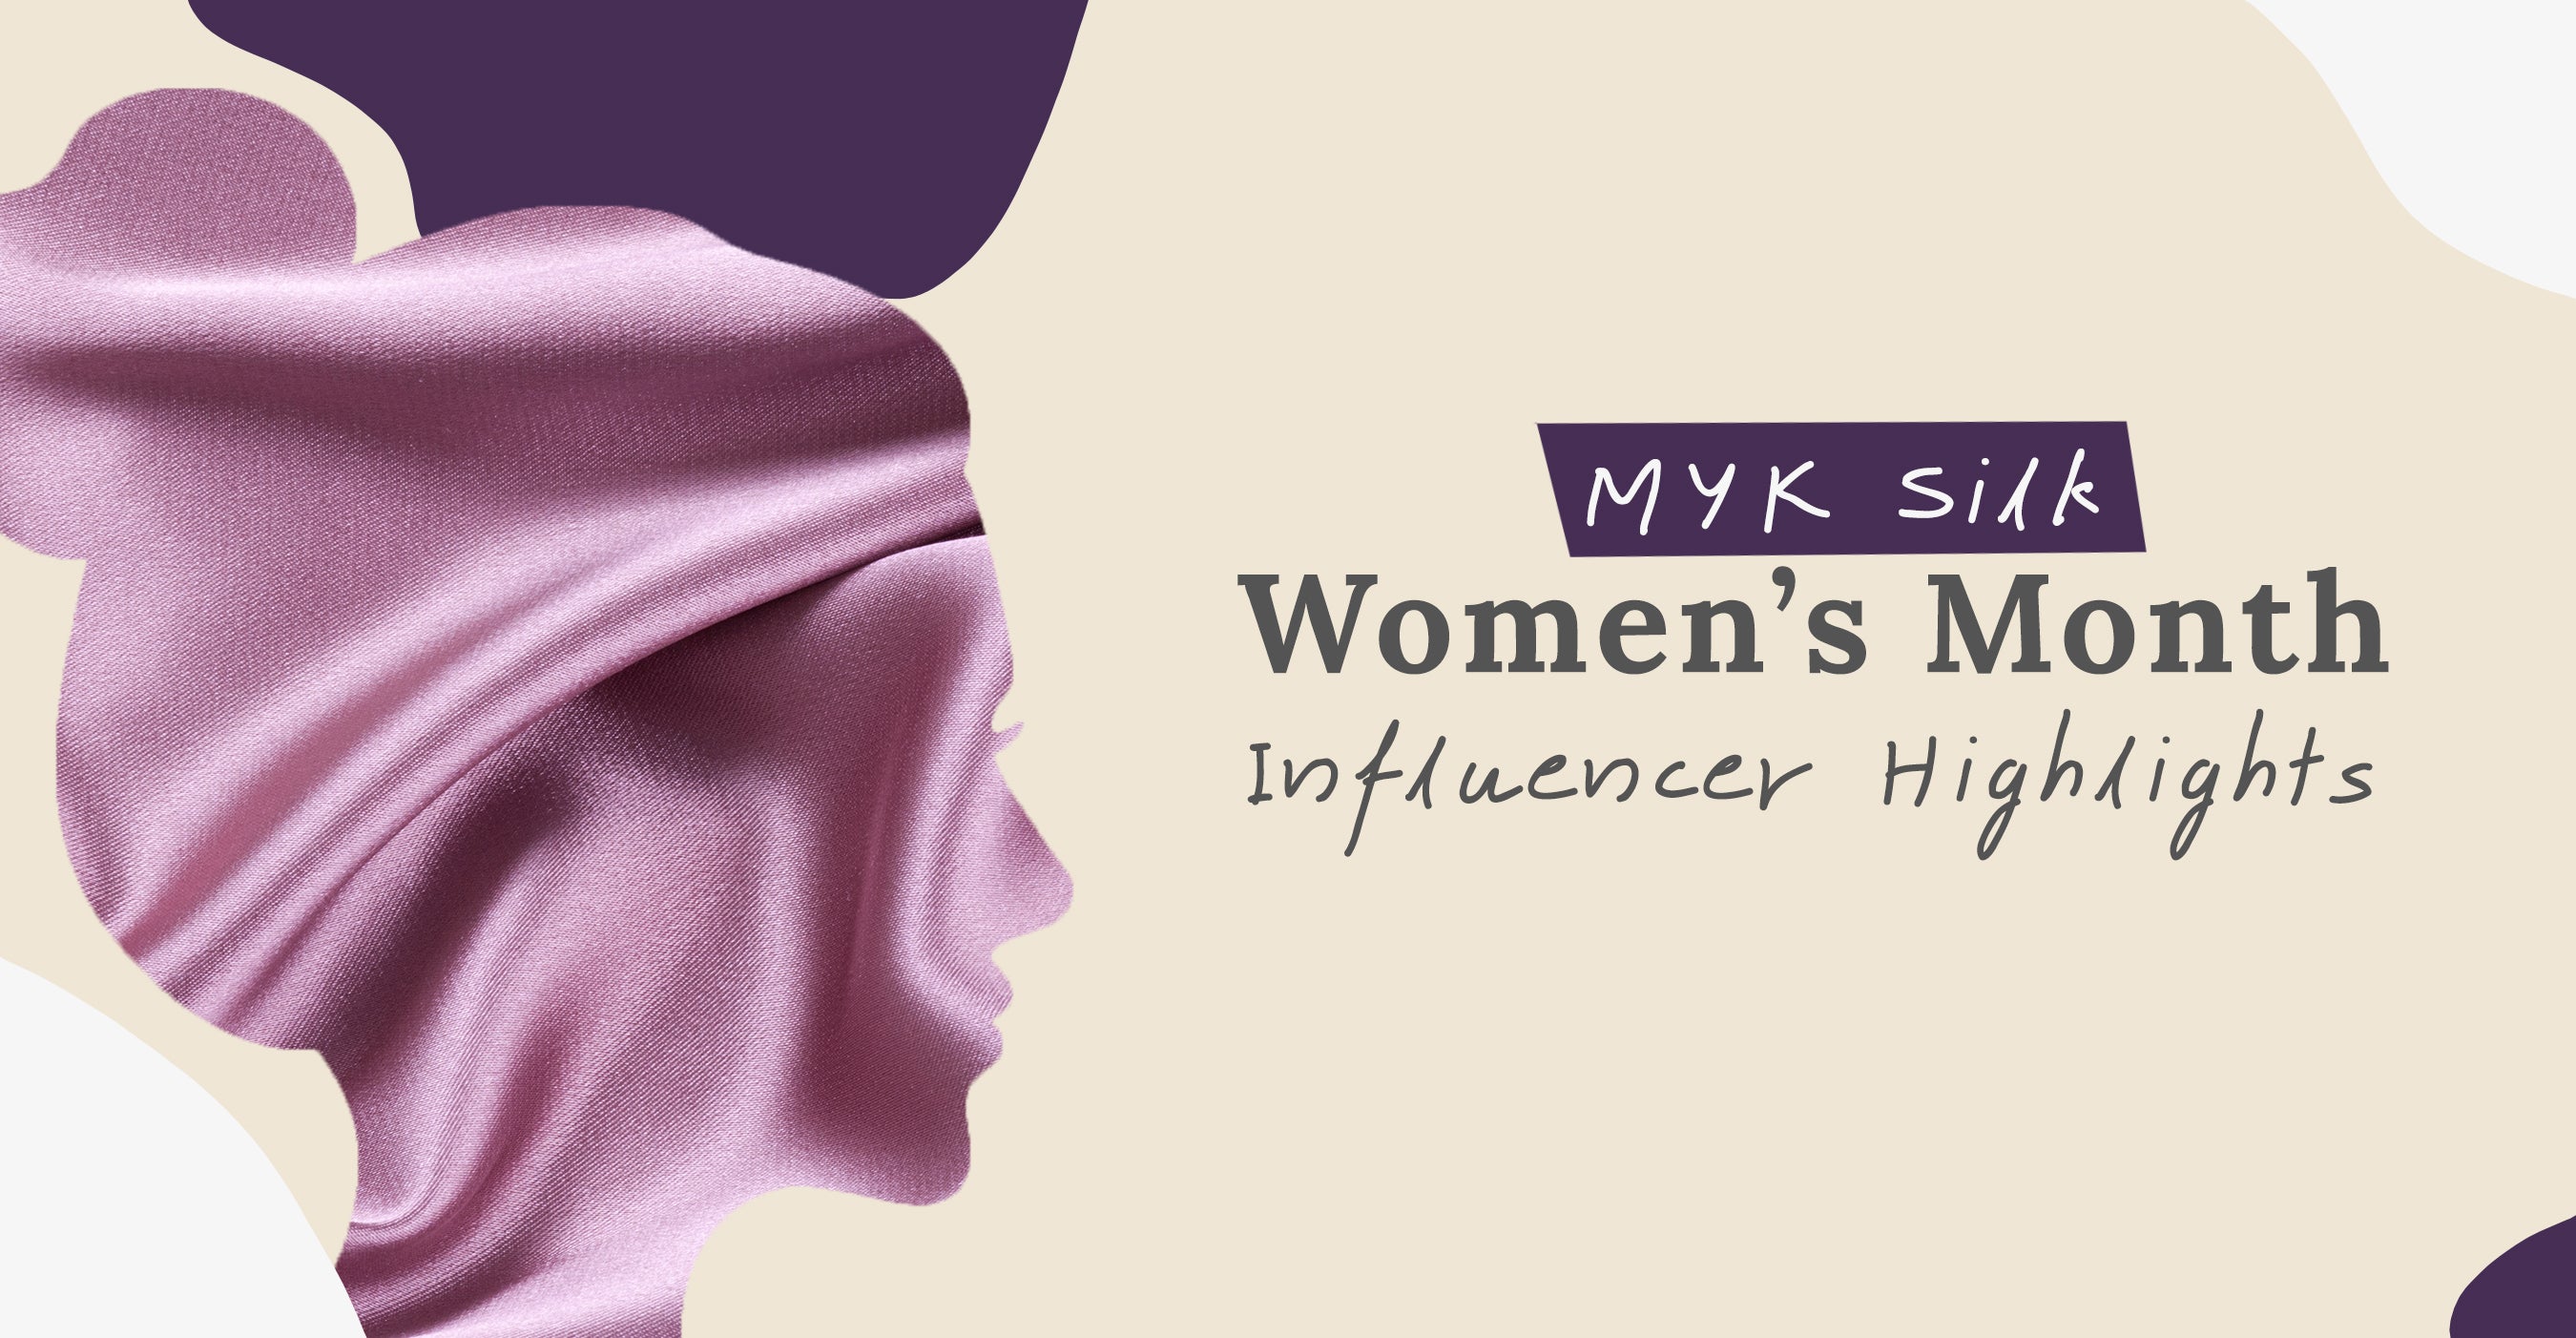 MYK Silk Women’s Month Influencer Highlights